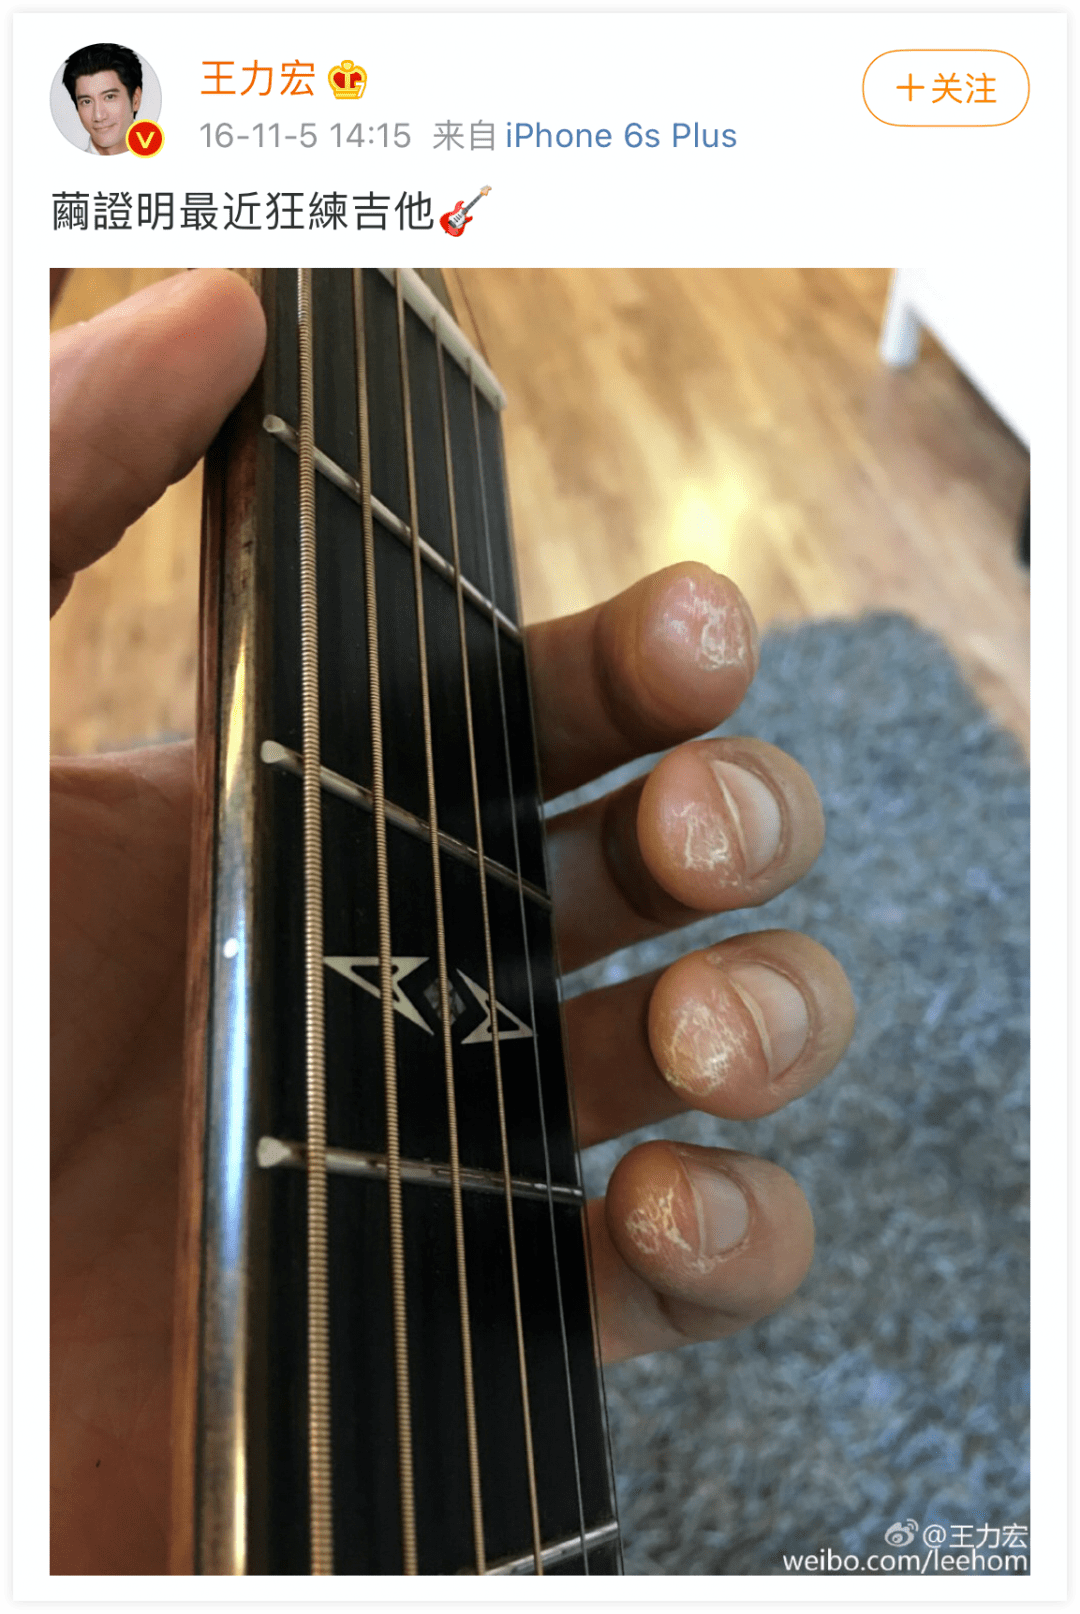 为了练吉他,手指磨出厚厚的茧子,这就是他努力的证明